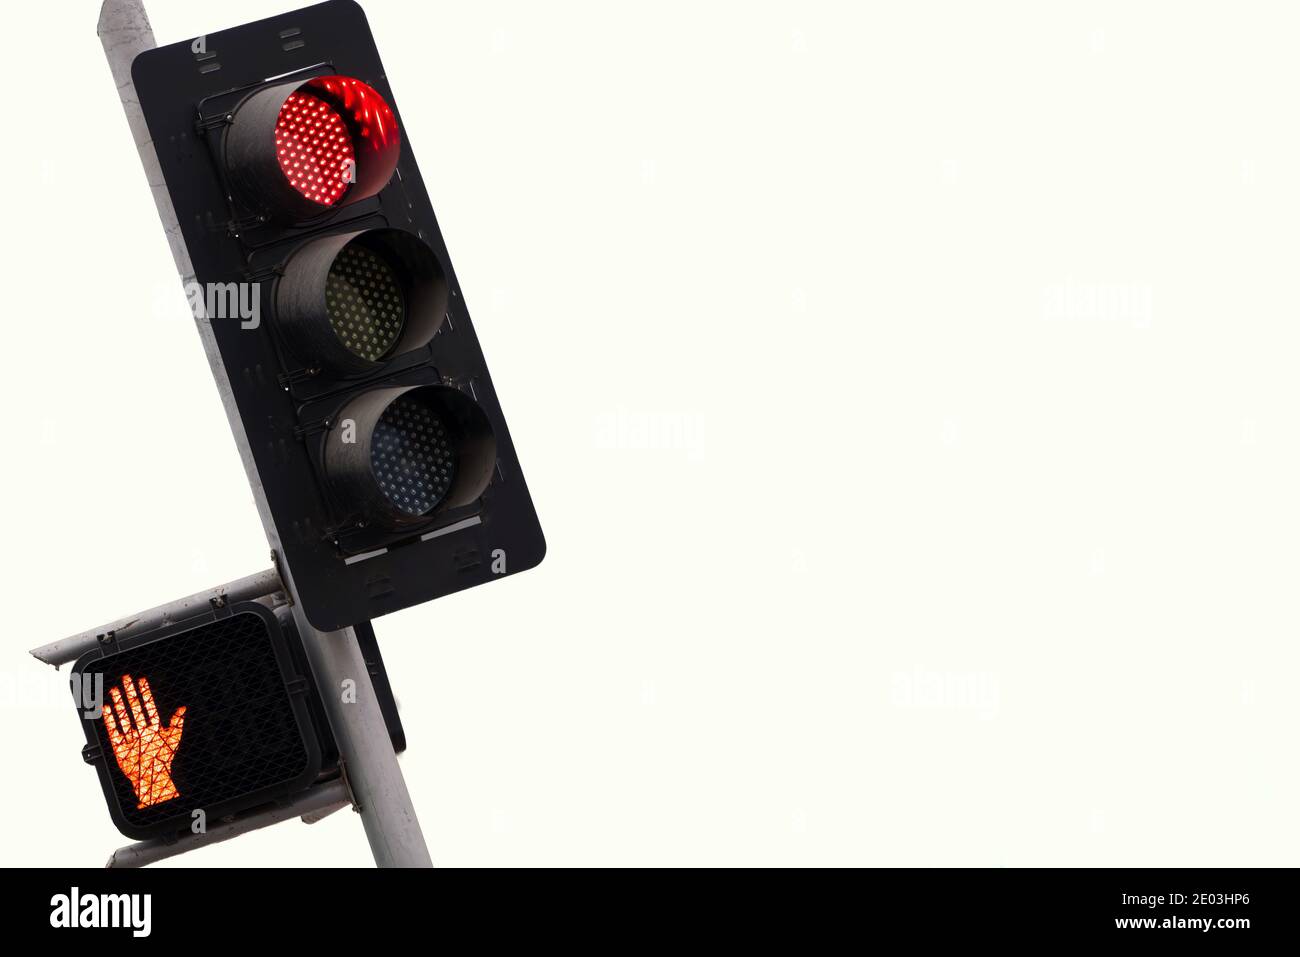 Isolierte rote Verkehrsschilder, die auf Verkehrsbehinderungen hinweisen, und rote Hand zeigt Anschlag für Fußgänger veranschaulichen Konzept von allem gestoppt Mit WH Stockfoto